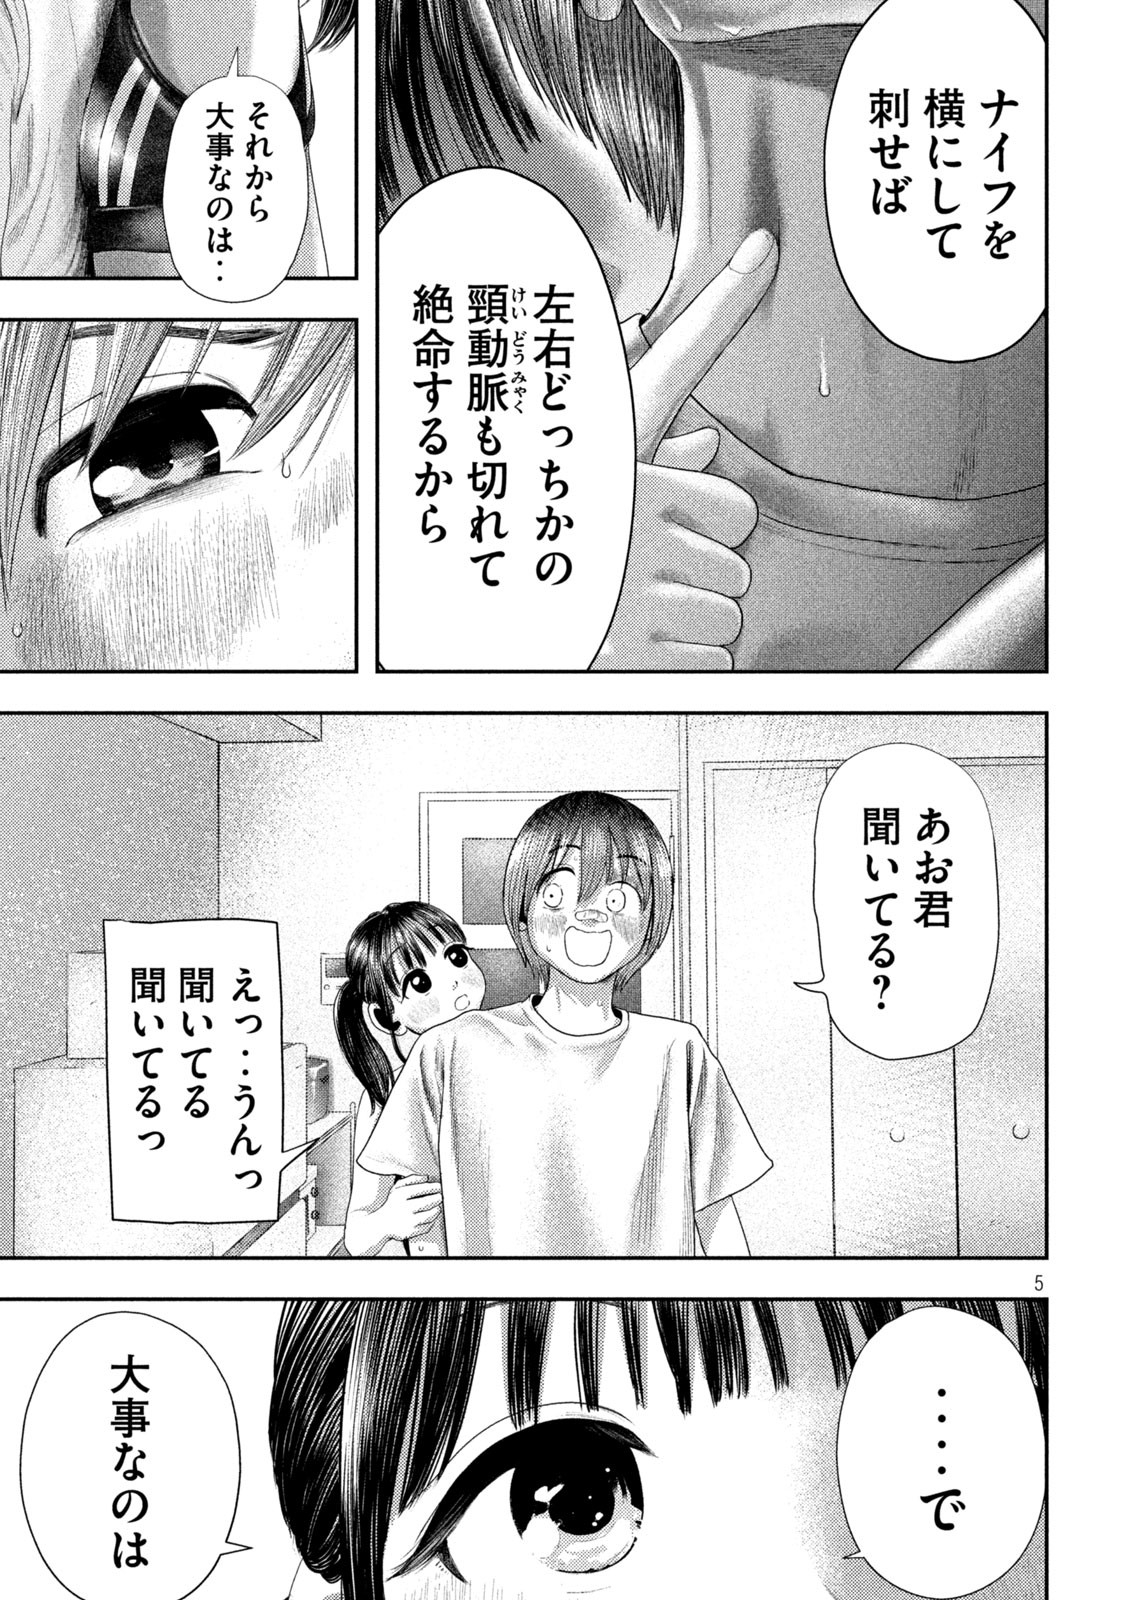 Nezumi no Koi - Chapter 4 - Page 5